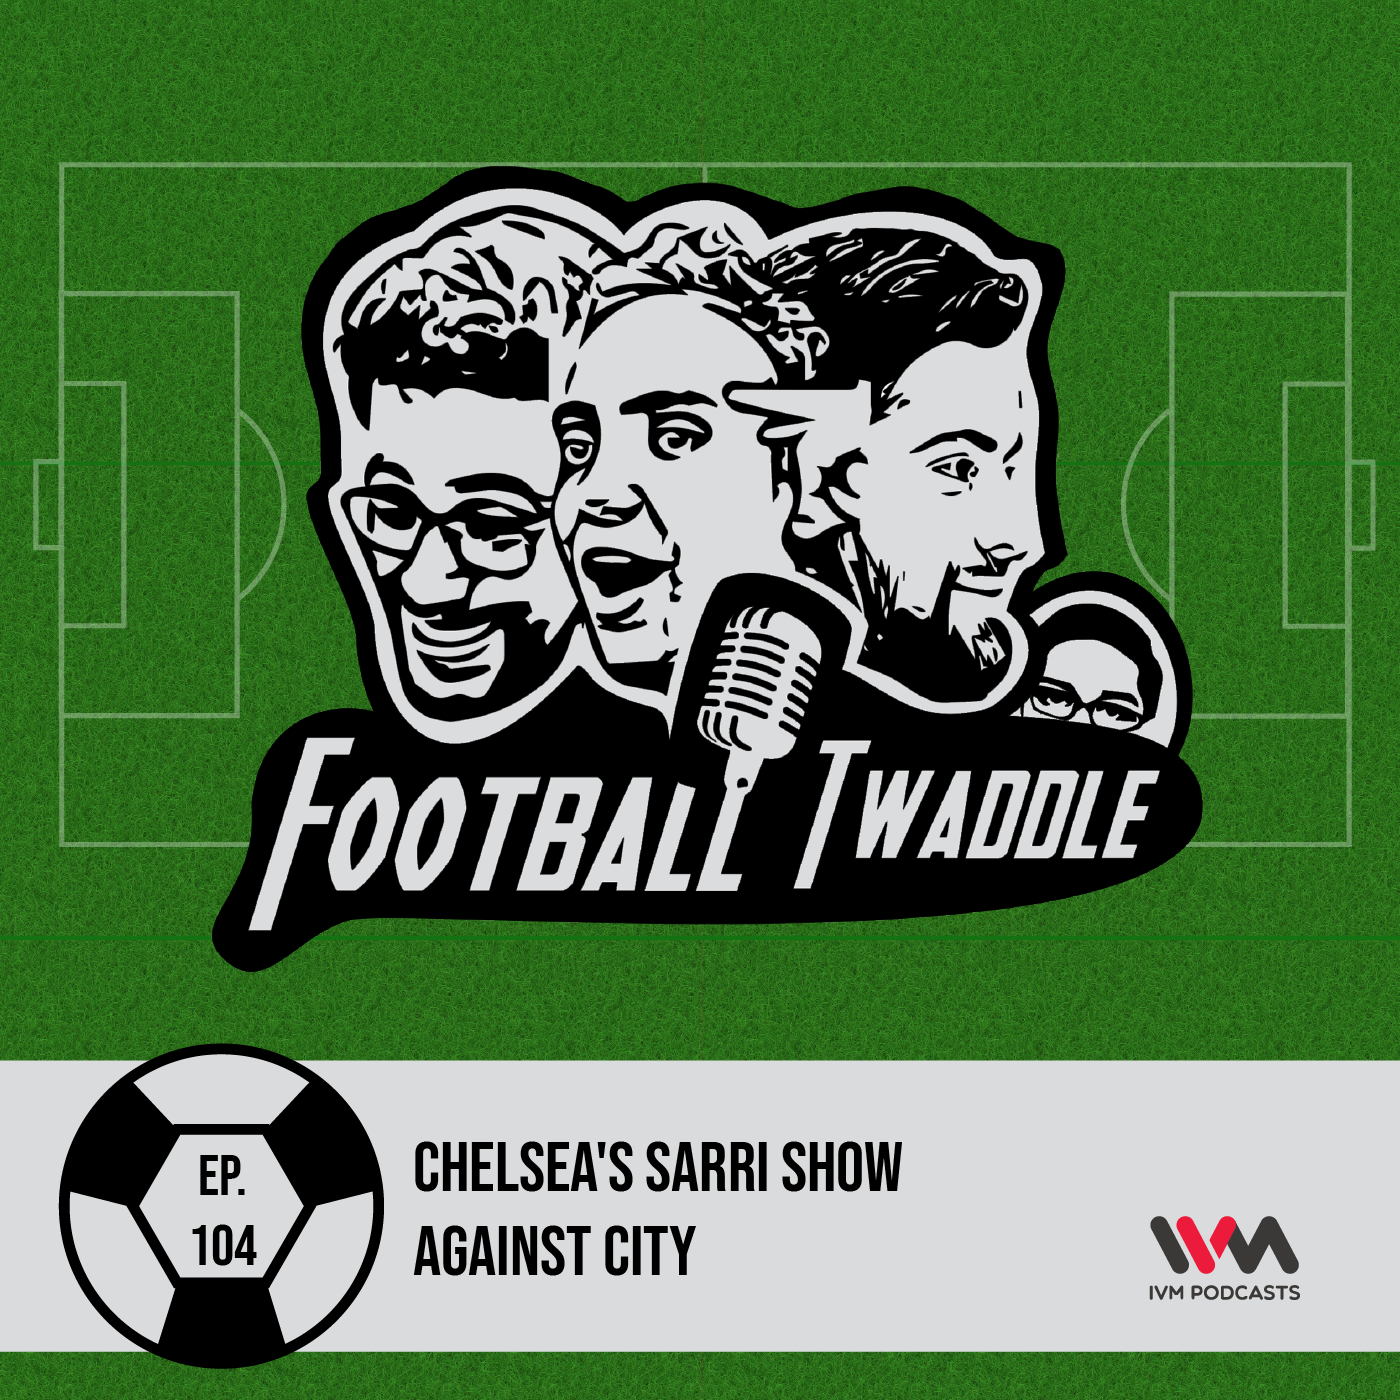 Chelsea's Sarri show against City